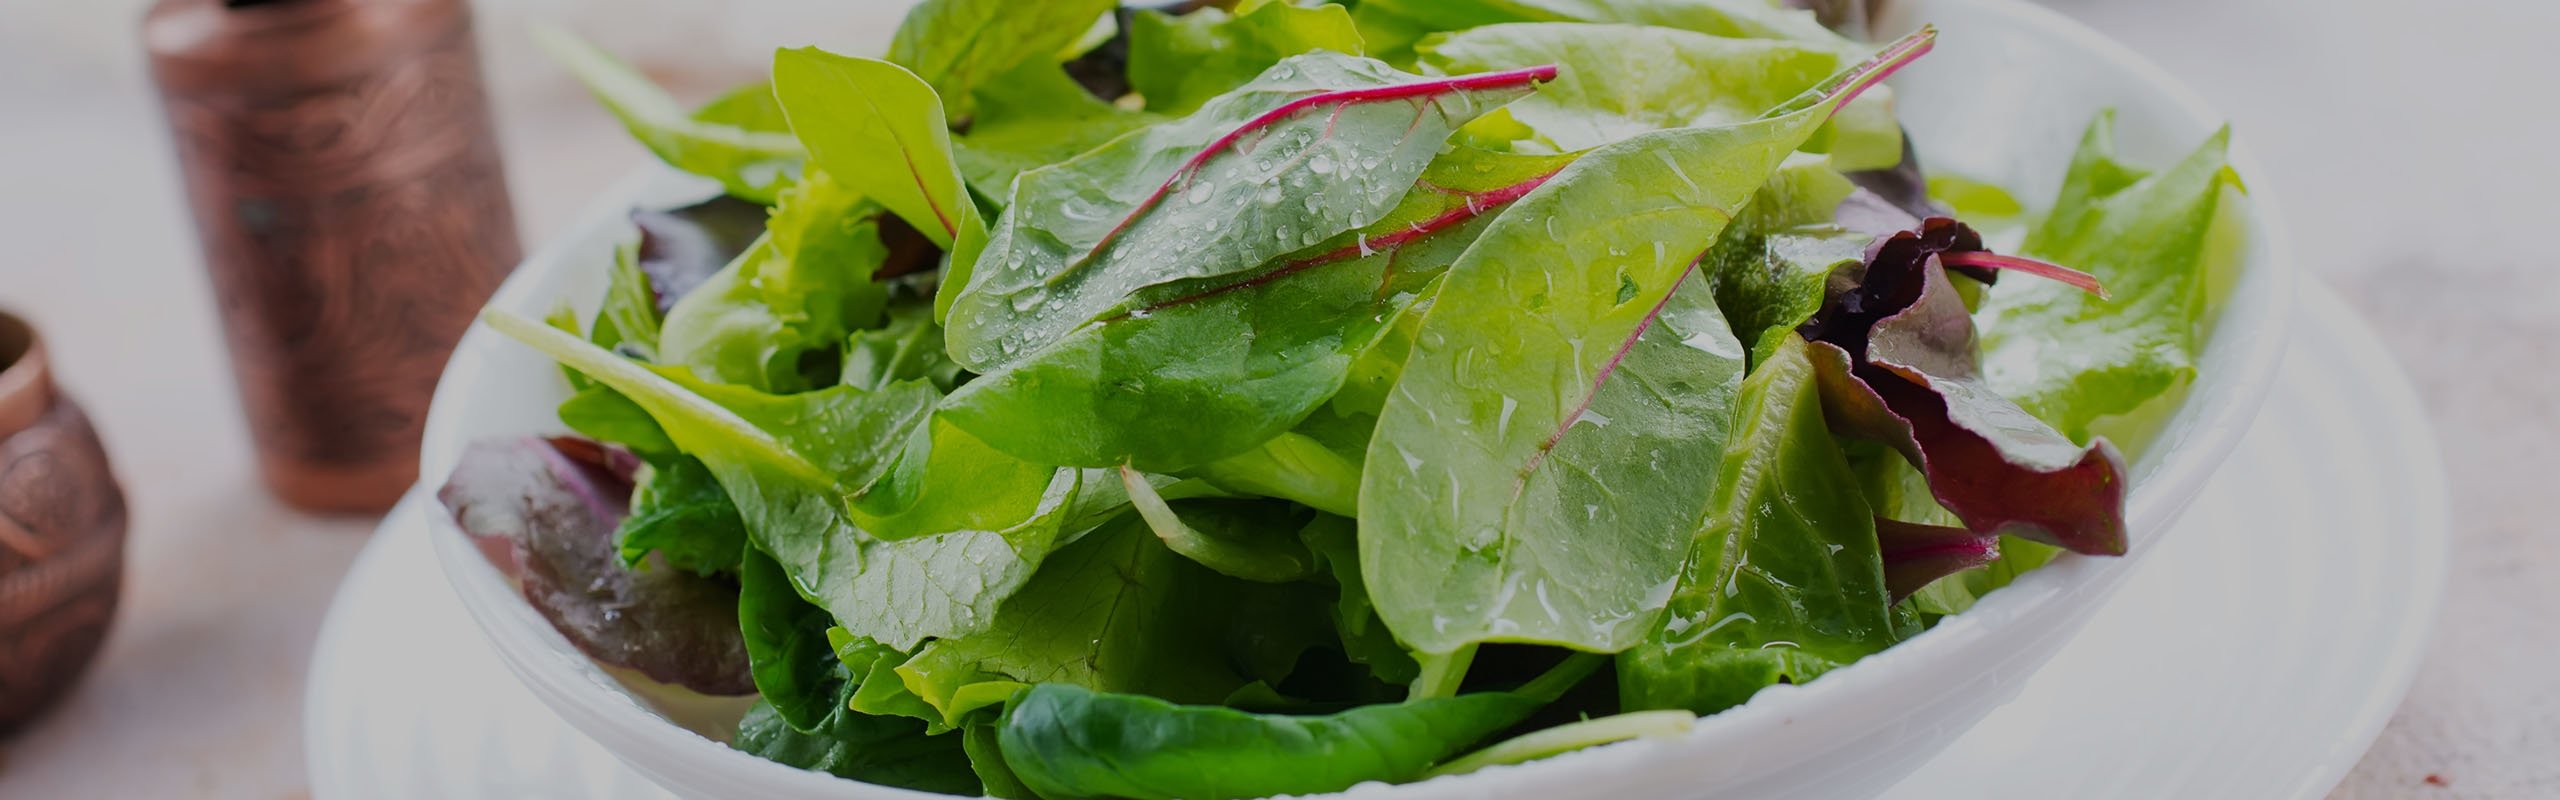 Grüner Salat mit Bautzner Kräuter Essig